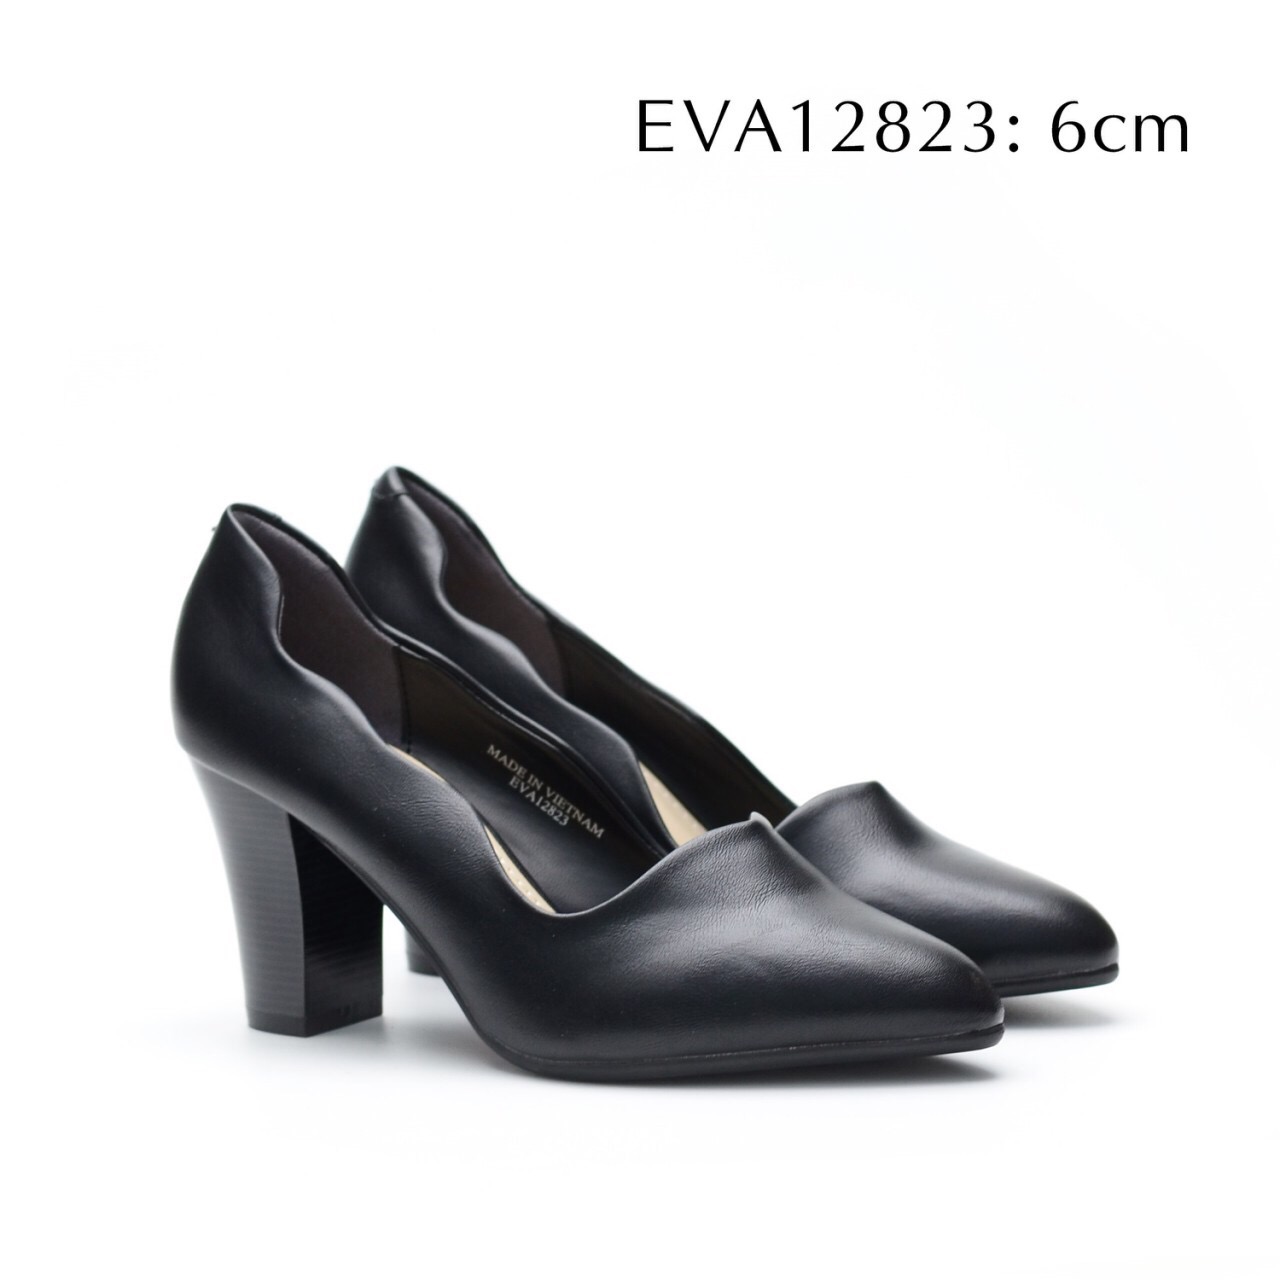 Giày nữ gợn sóng EVA12823 cao 6cm thiết kế đơn giản, tinh tế